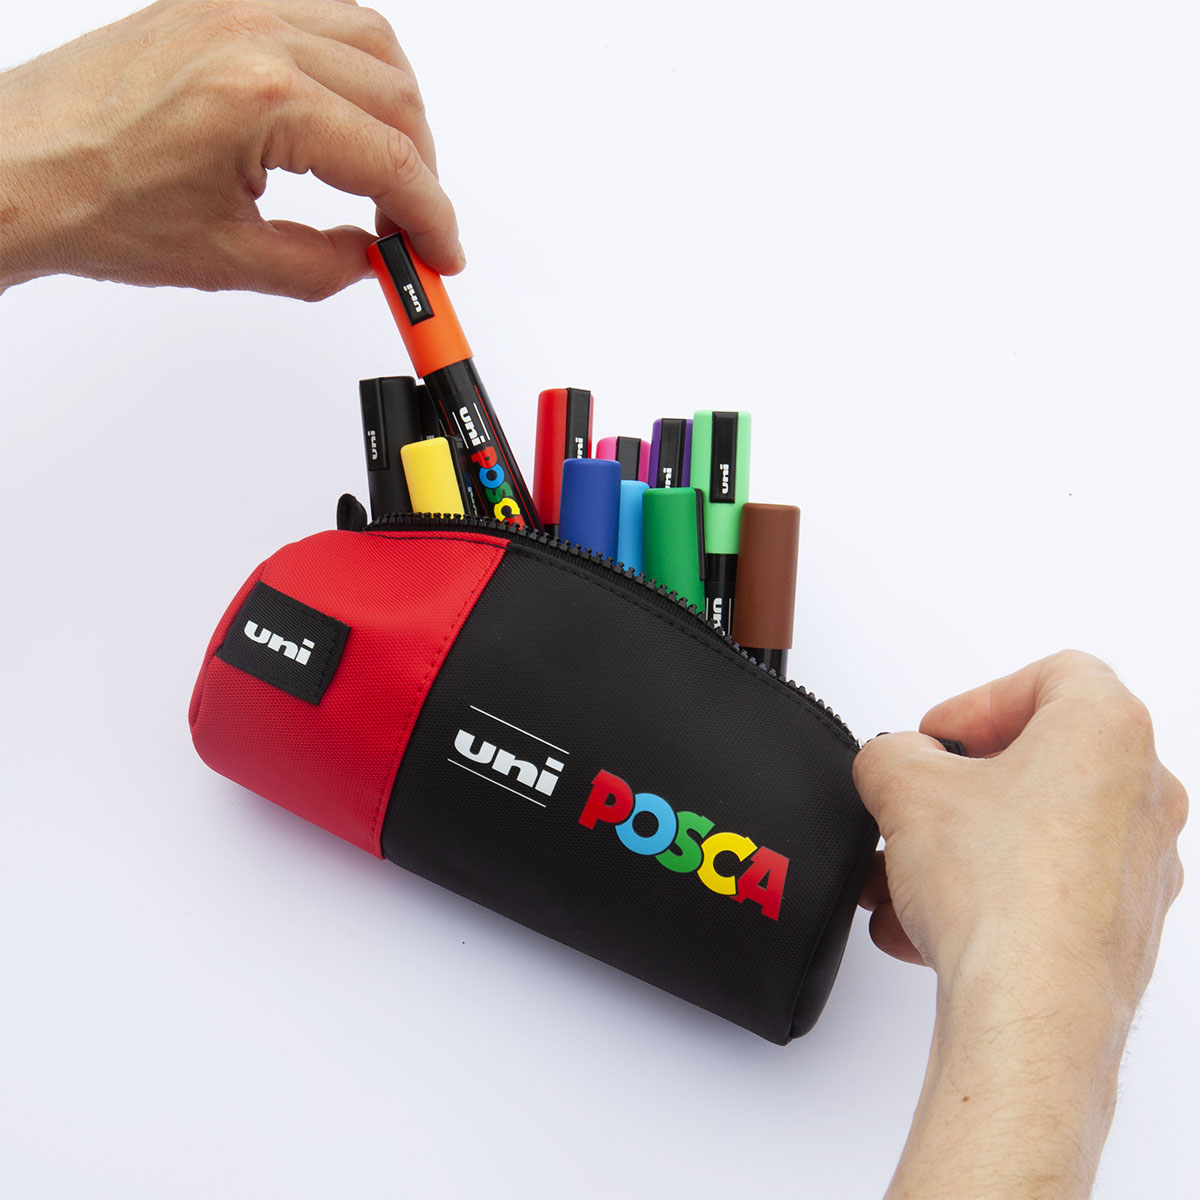 Uni Posca PC-3M Pen Case 12 set Main Colors 